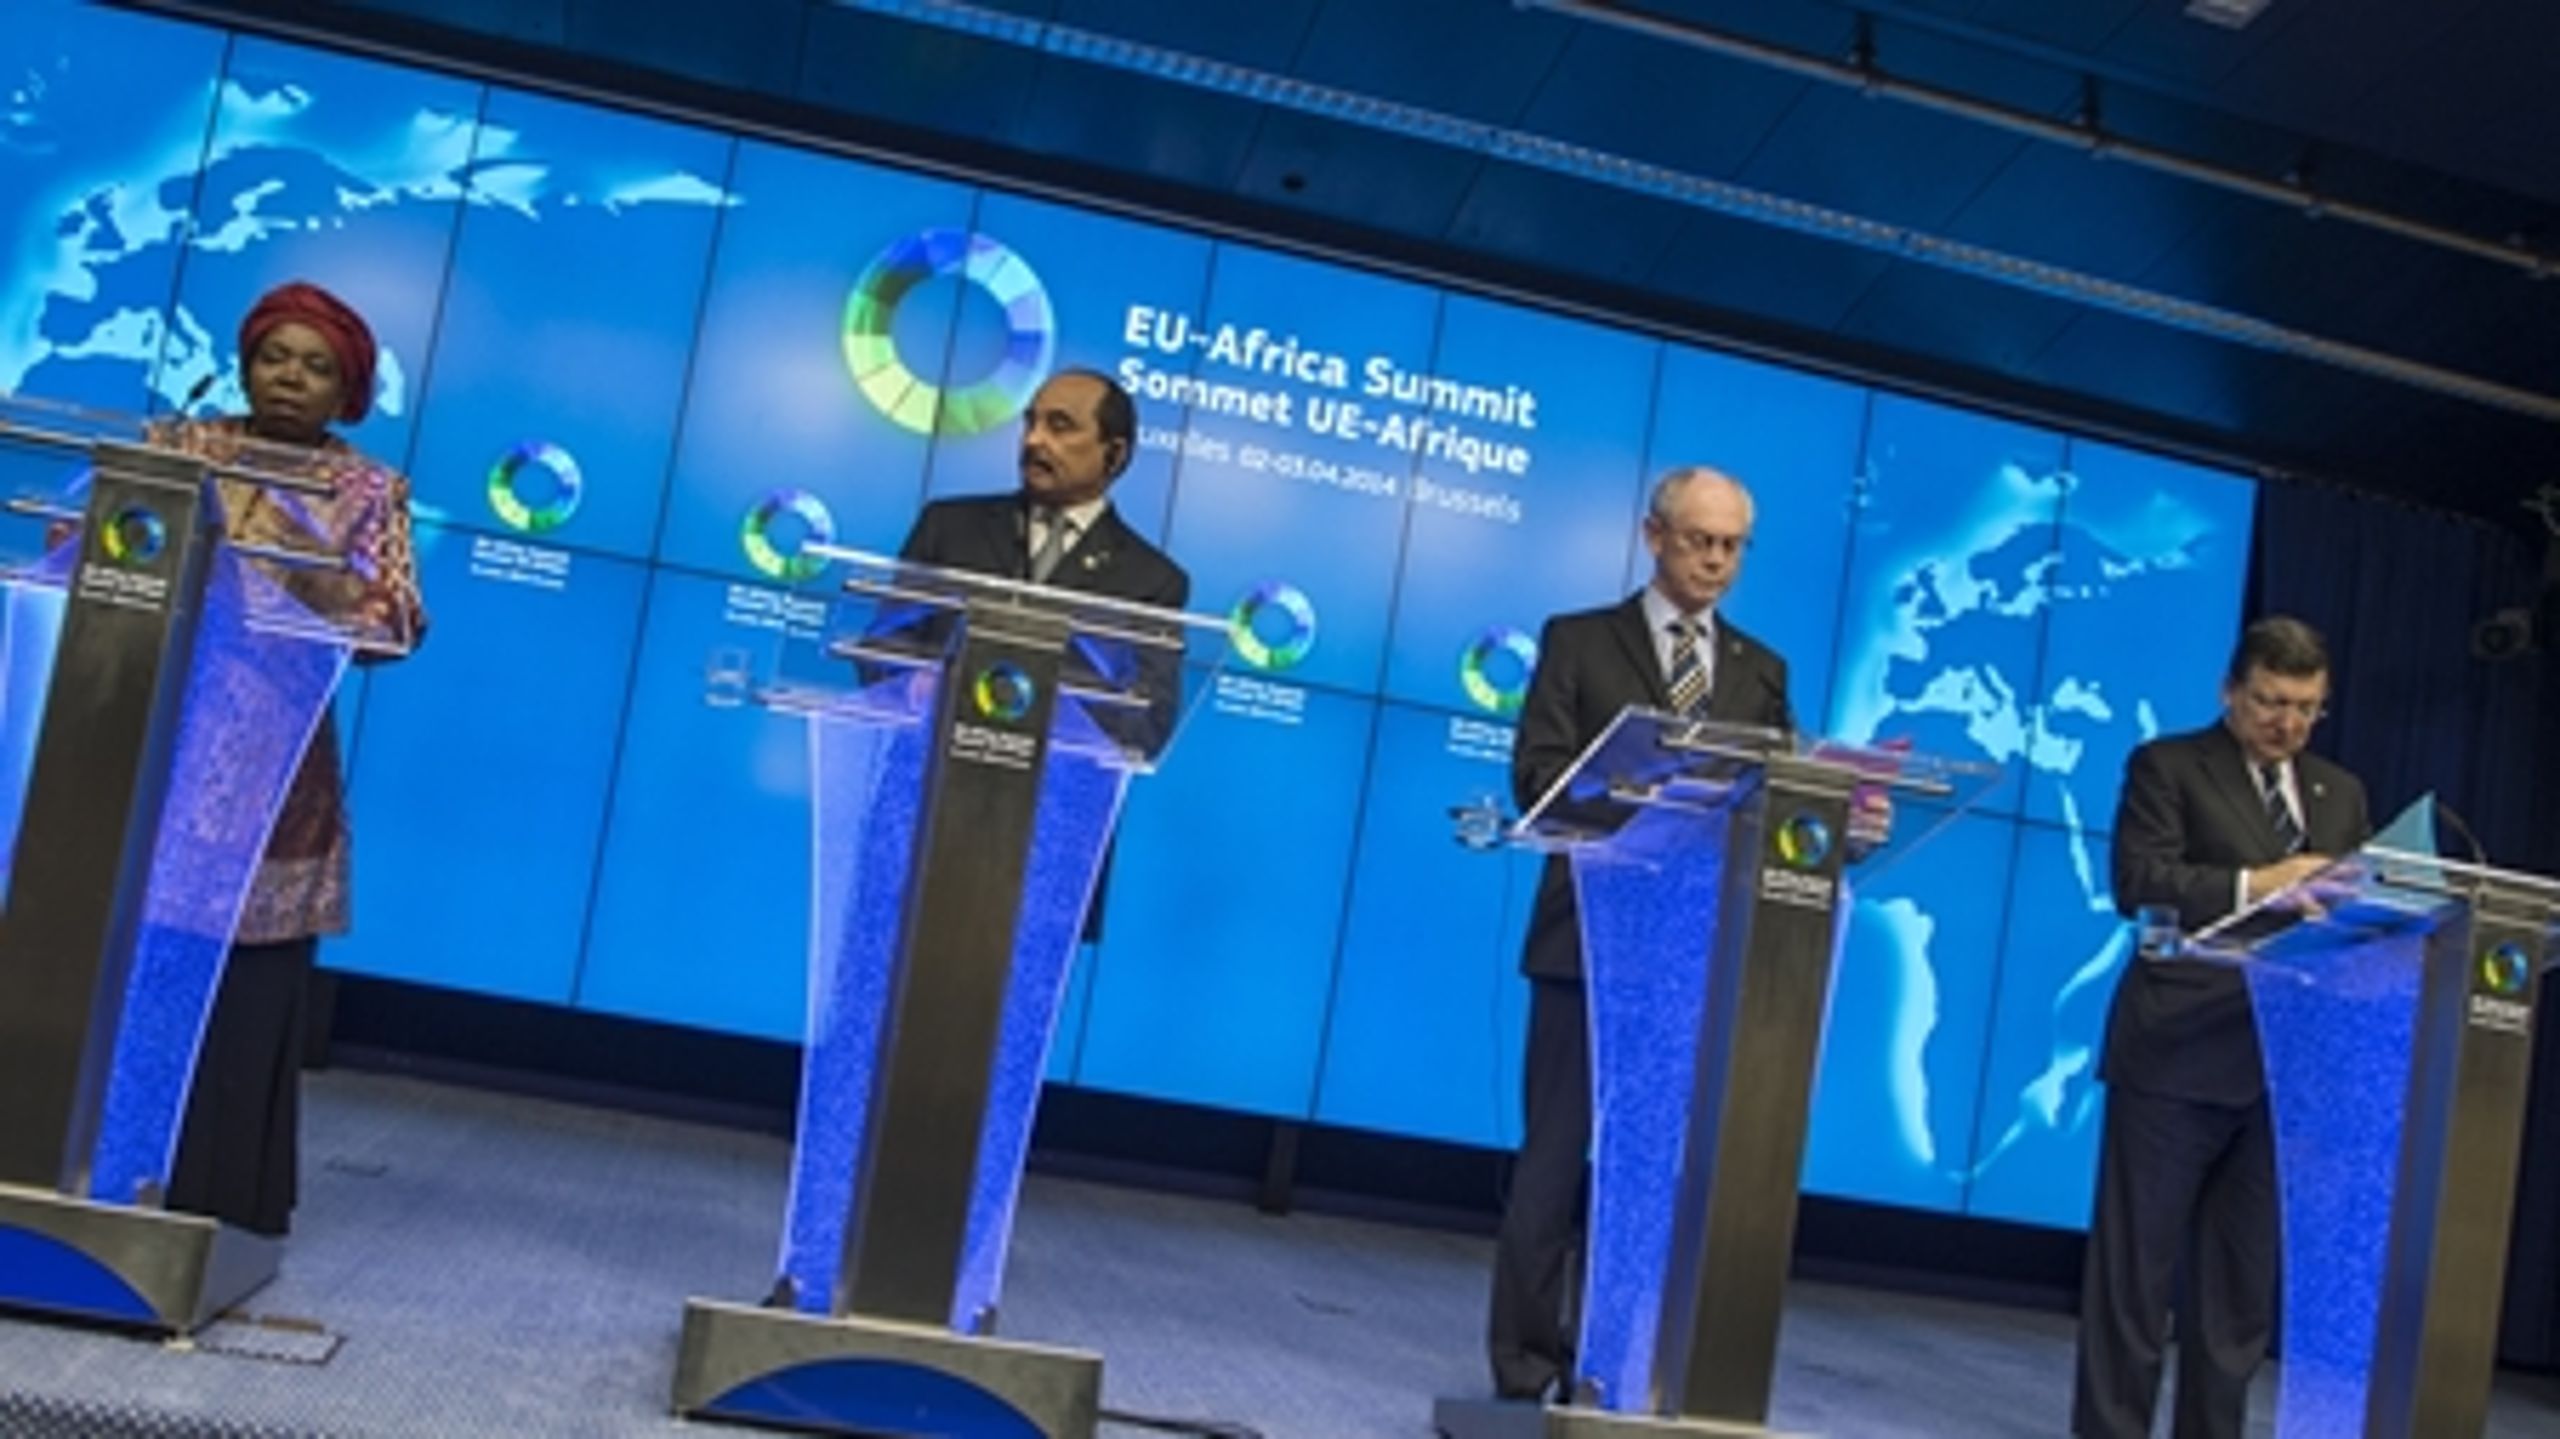 De langstrakte forhandlinger om økonomiske partnerskaber truede med at overskygge et topmøde mellem europæiske og afrikanske ledere tidligere på året.